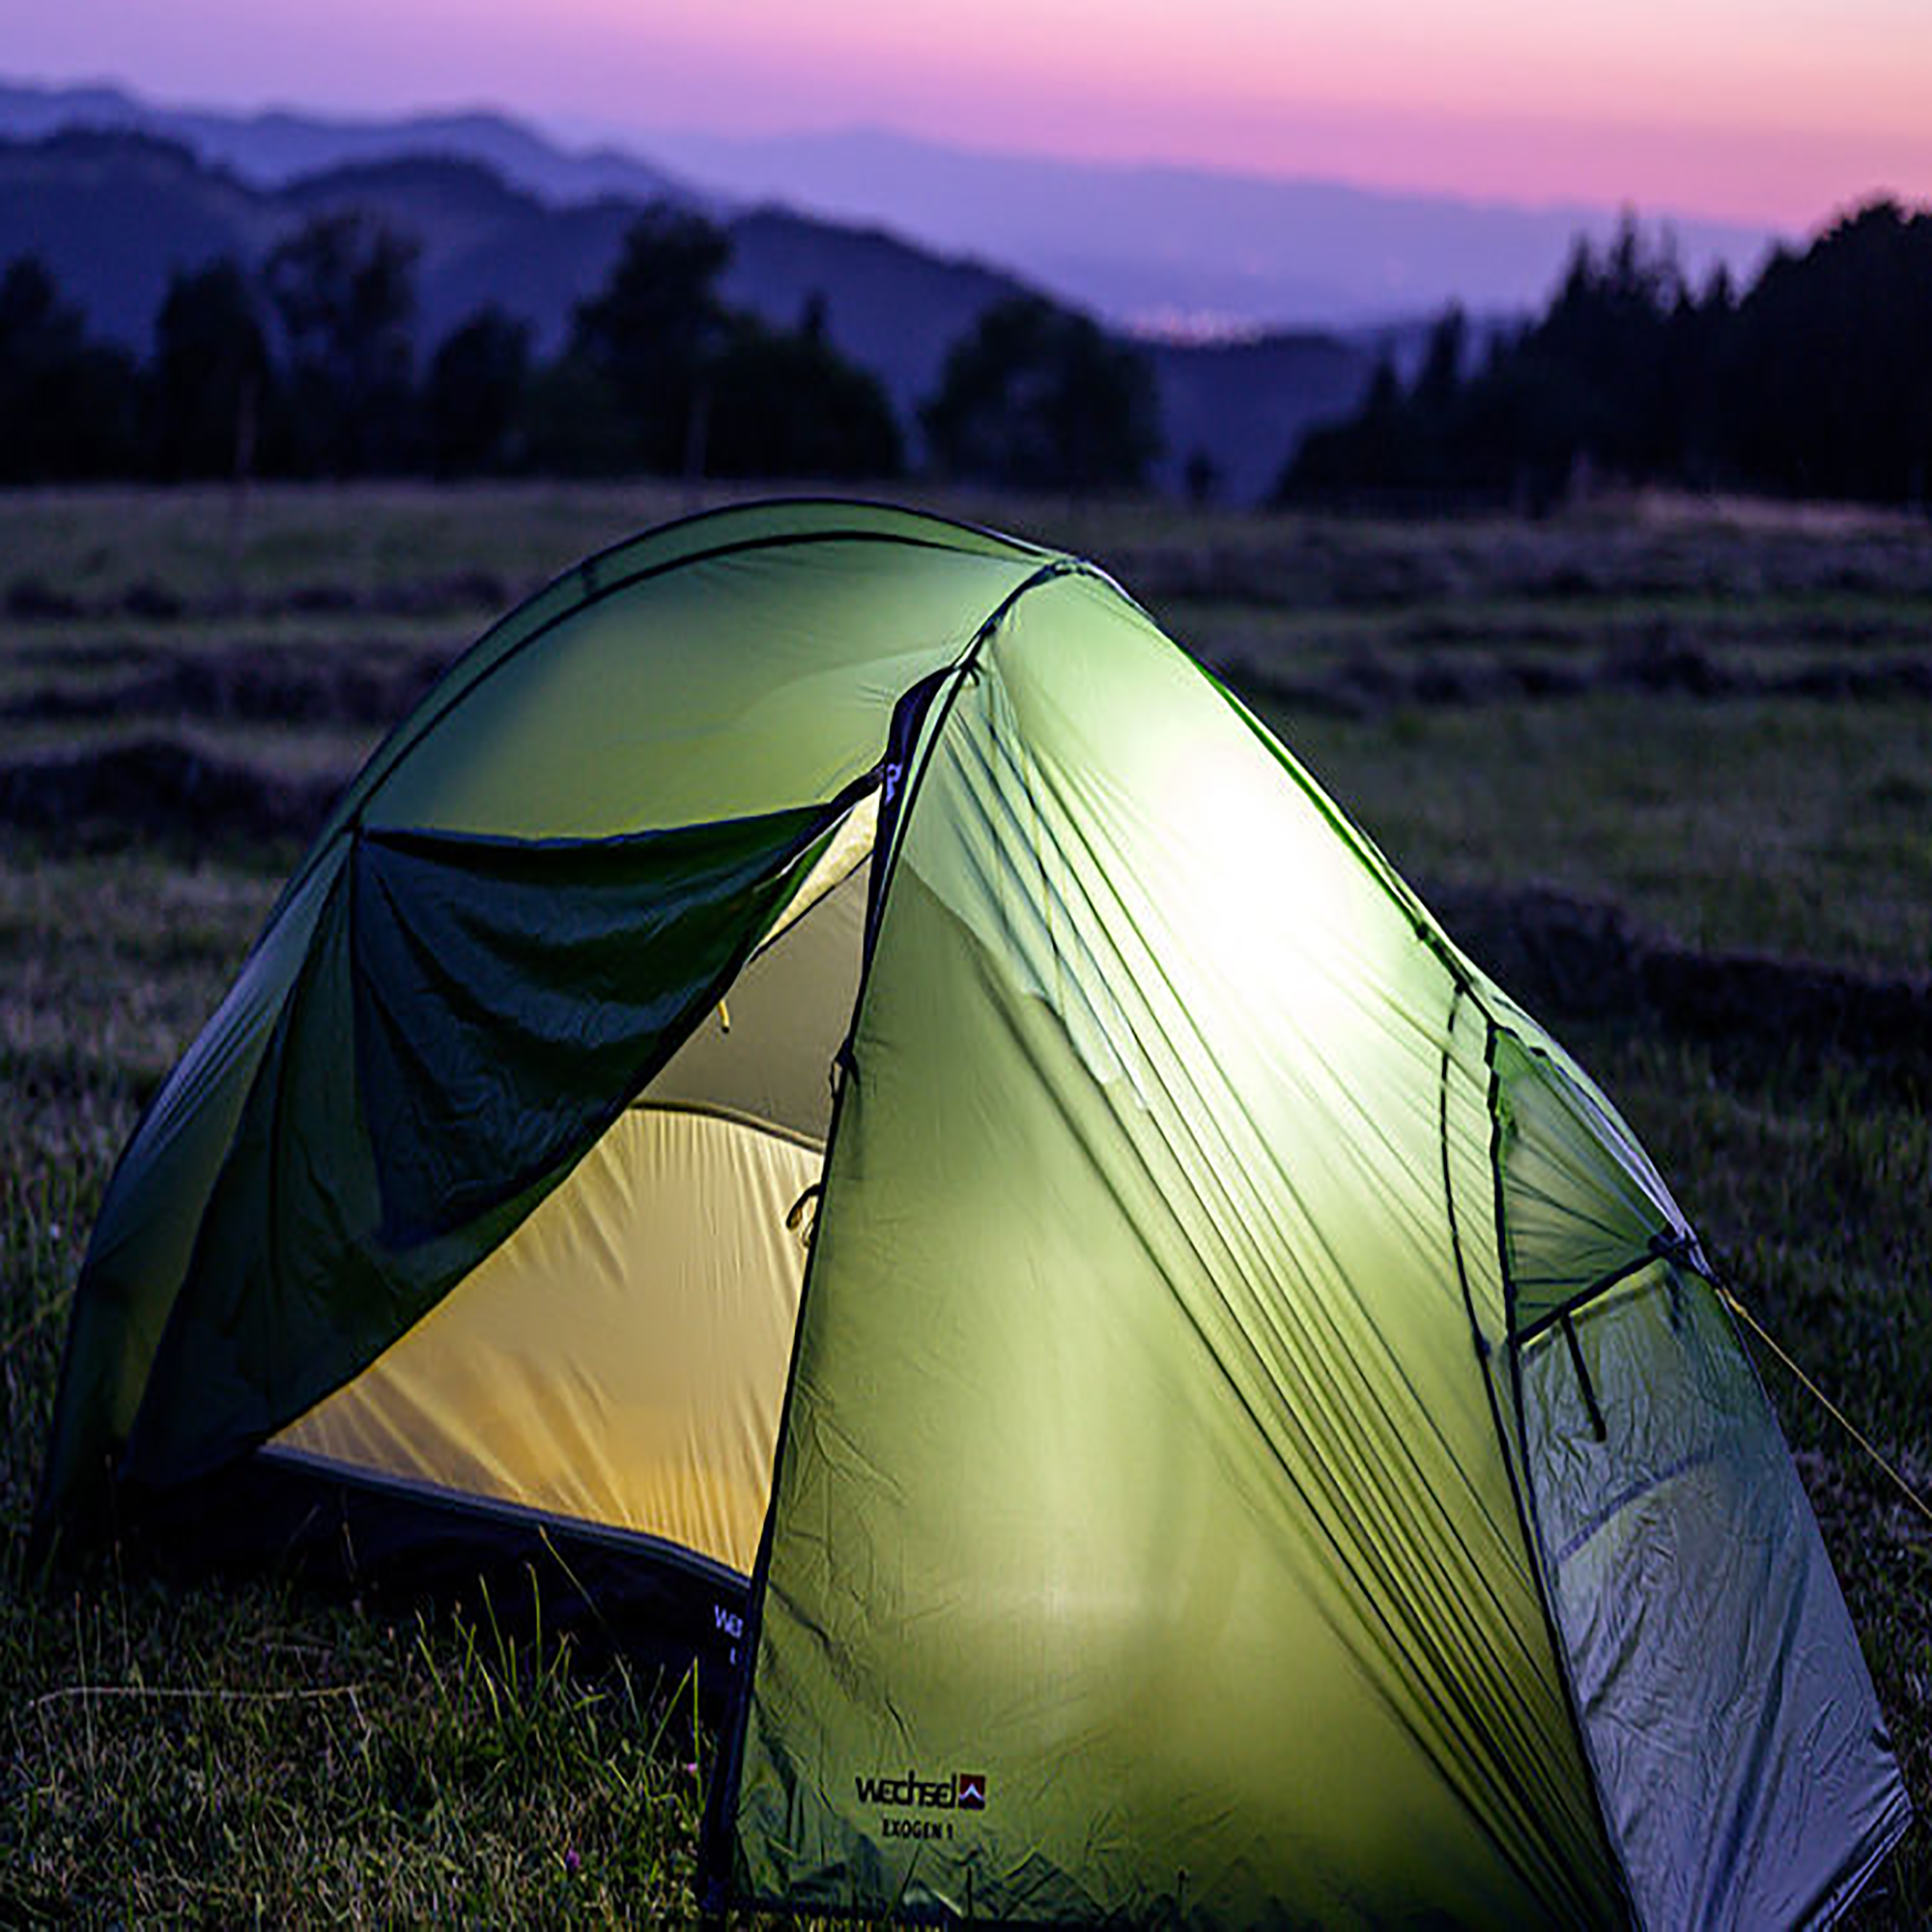 Wechsel Exogen 1 Ultralight Hiking Tent